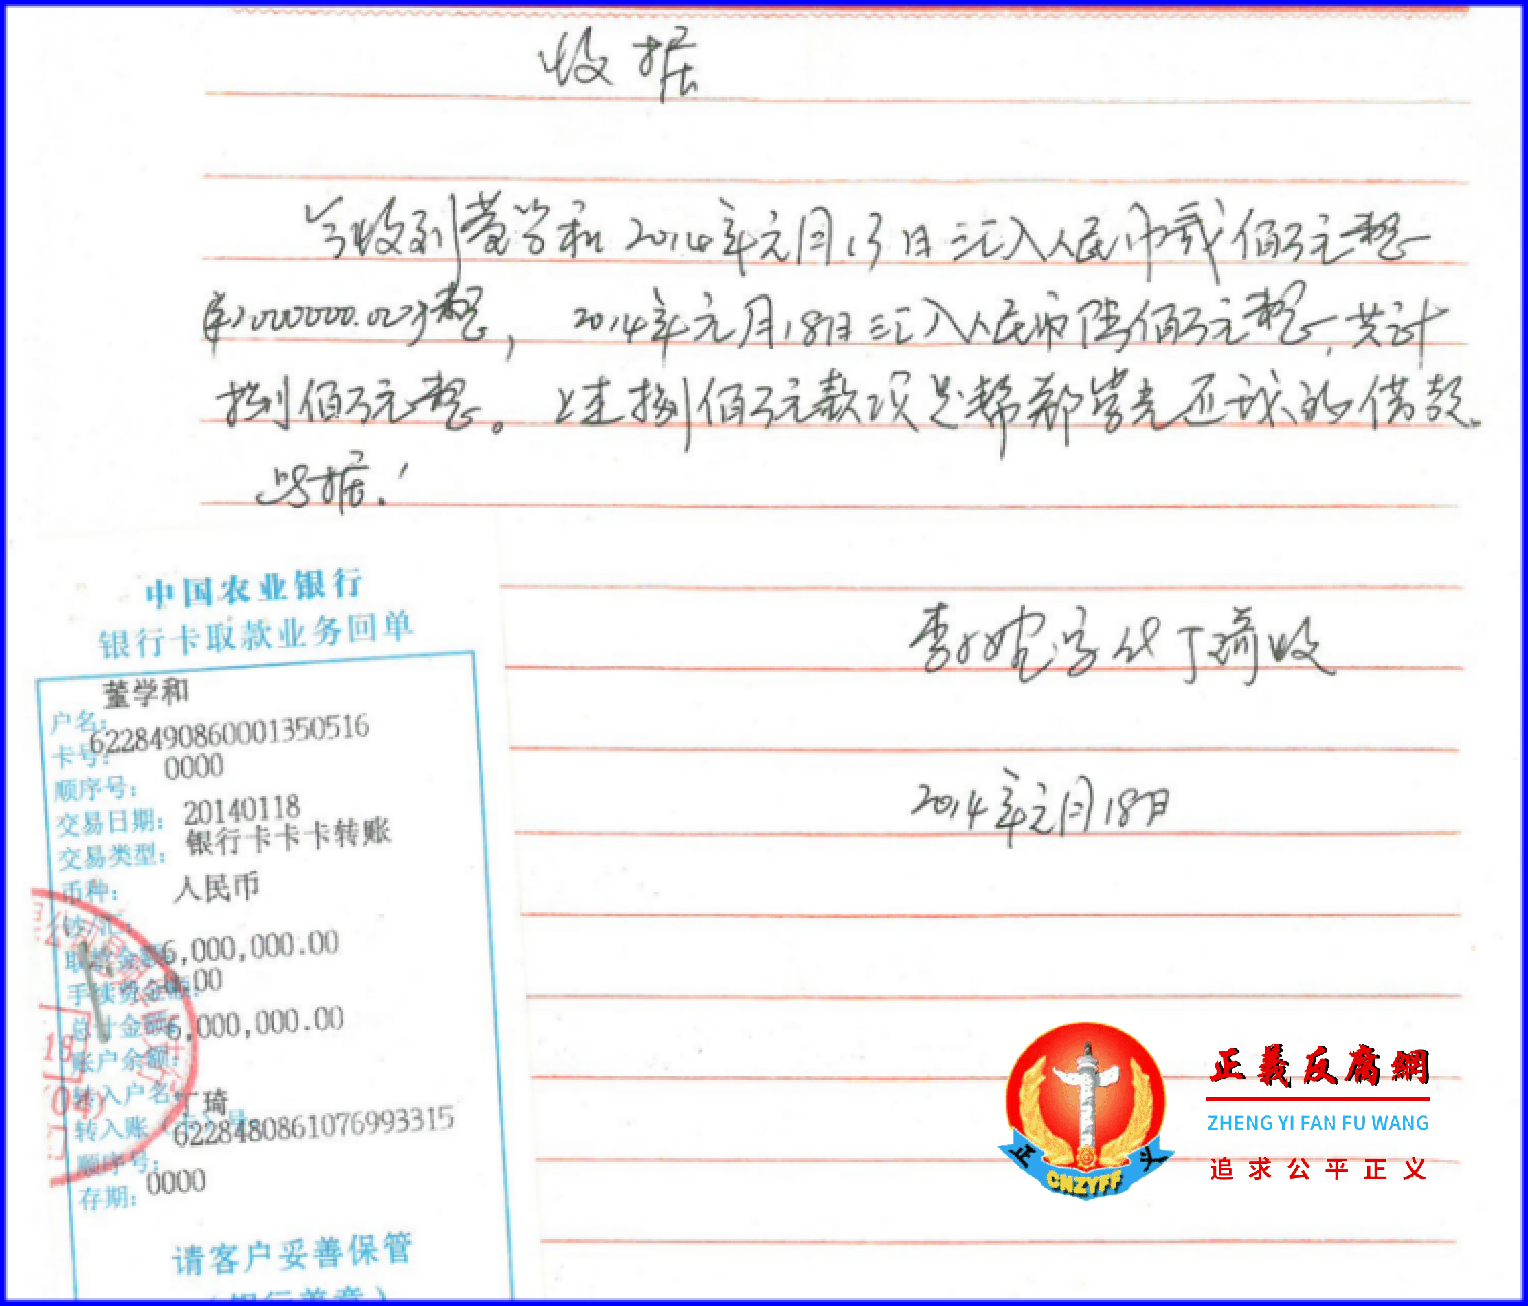 2014年1月13日和18日《收据》分别付给李小婉200万元和600万元，欠款504万元。.png